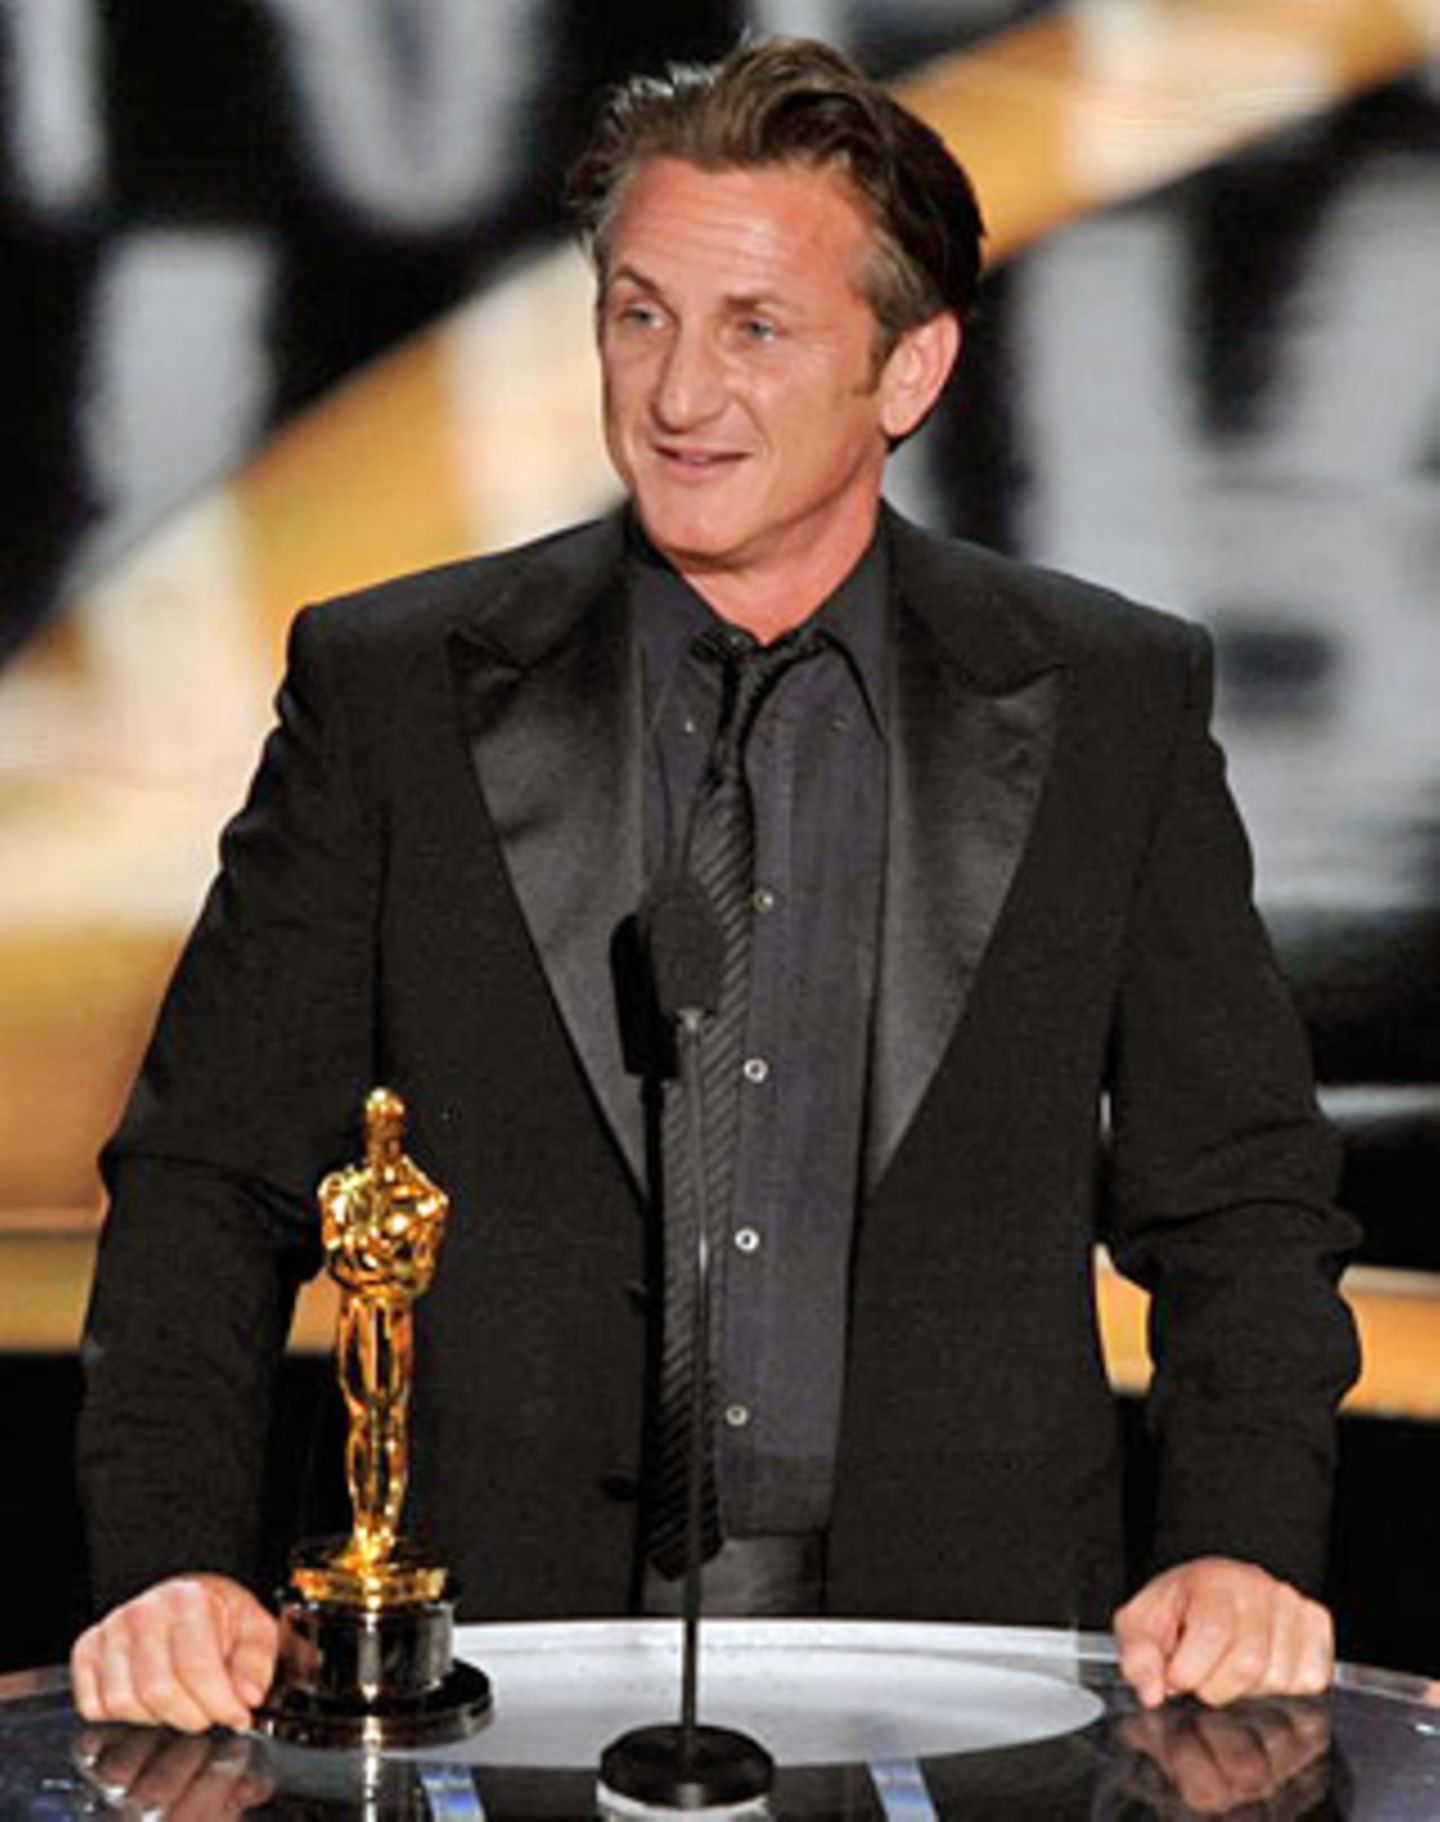 Die Rolle des schwulen Politikers Harvey Milk brachte Sean Penn seinen zweiten Oscar als bester Hauptdarsteller ein. Er nutzte die Bühne für einen politischen Appell. Im Hinblick auf die in den USA umstrittene Homosexuellen-Ehe forderte er gleiche Rechte für alle.